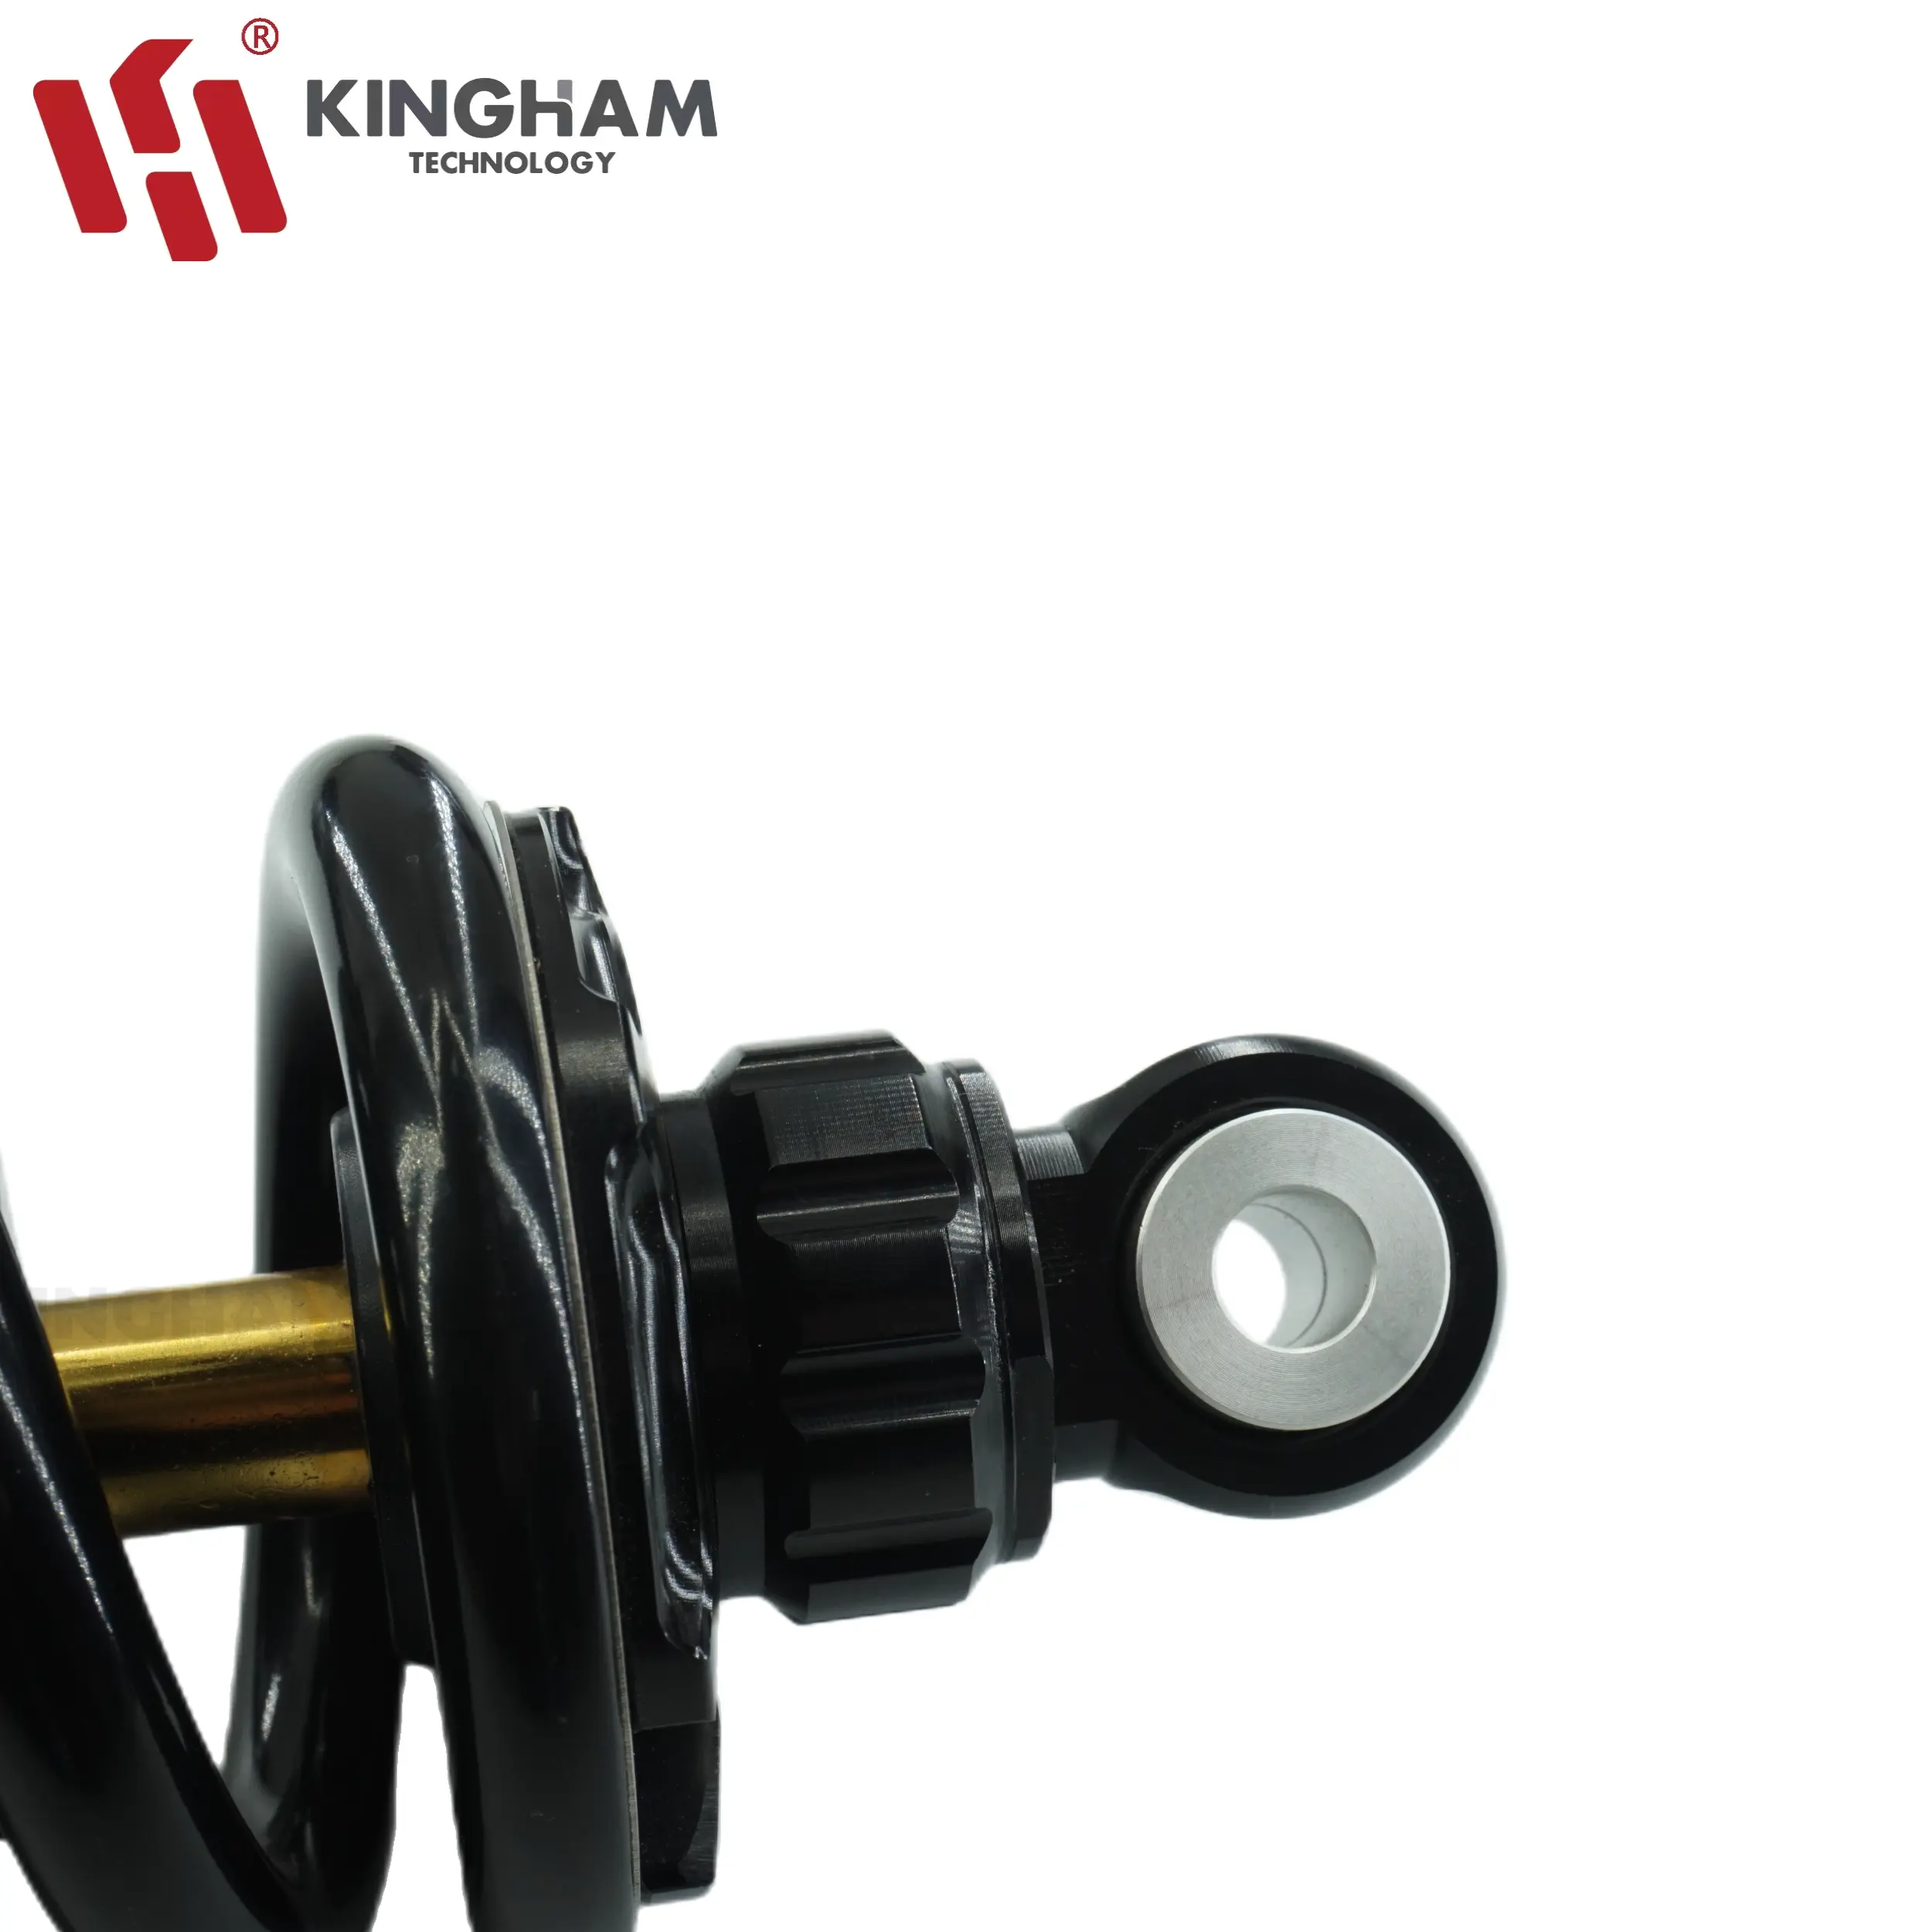 Moto d'amortisseur réglable de rebond de KINGHAM pour la personnalisation d'amortisseur arrière de Yamaha